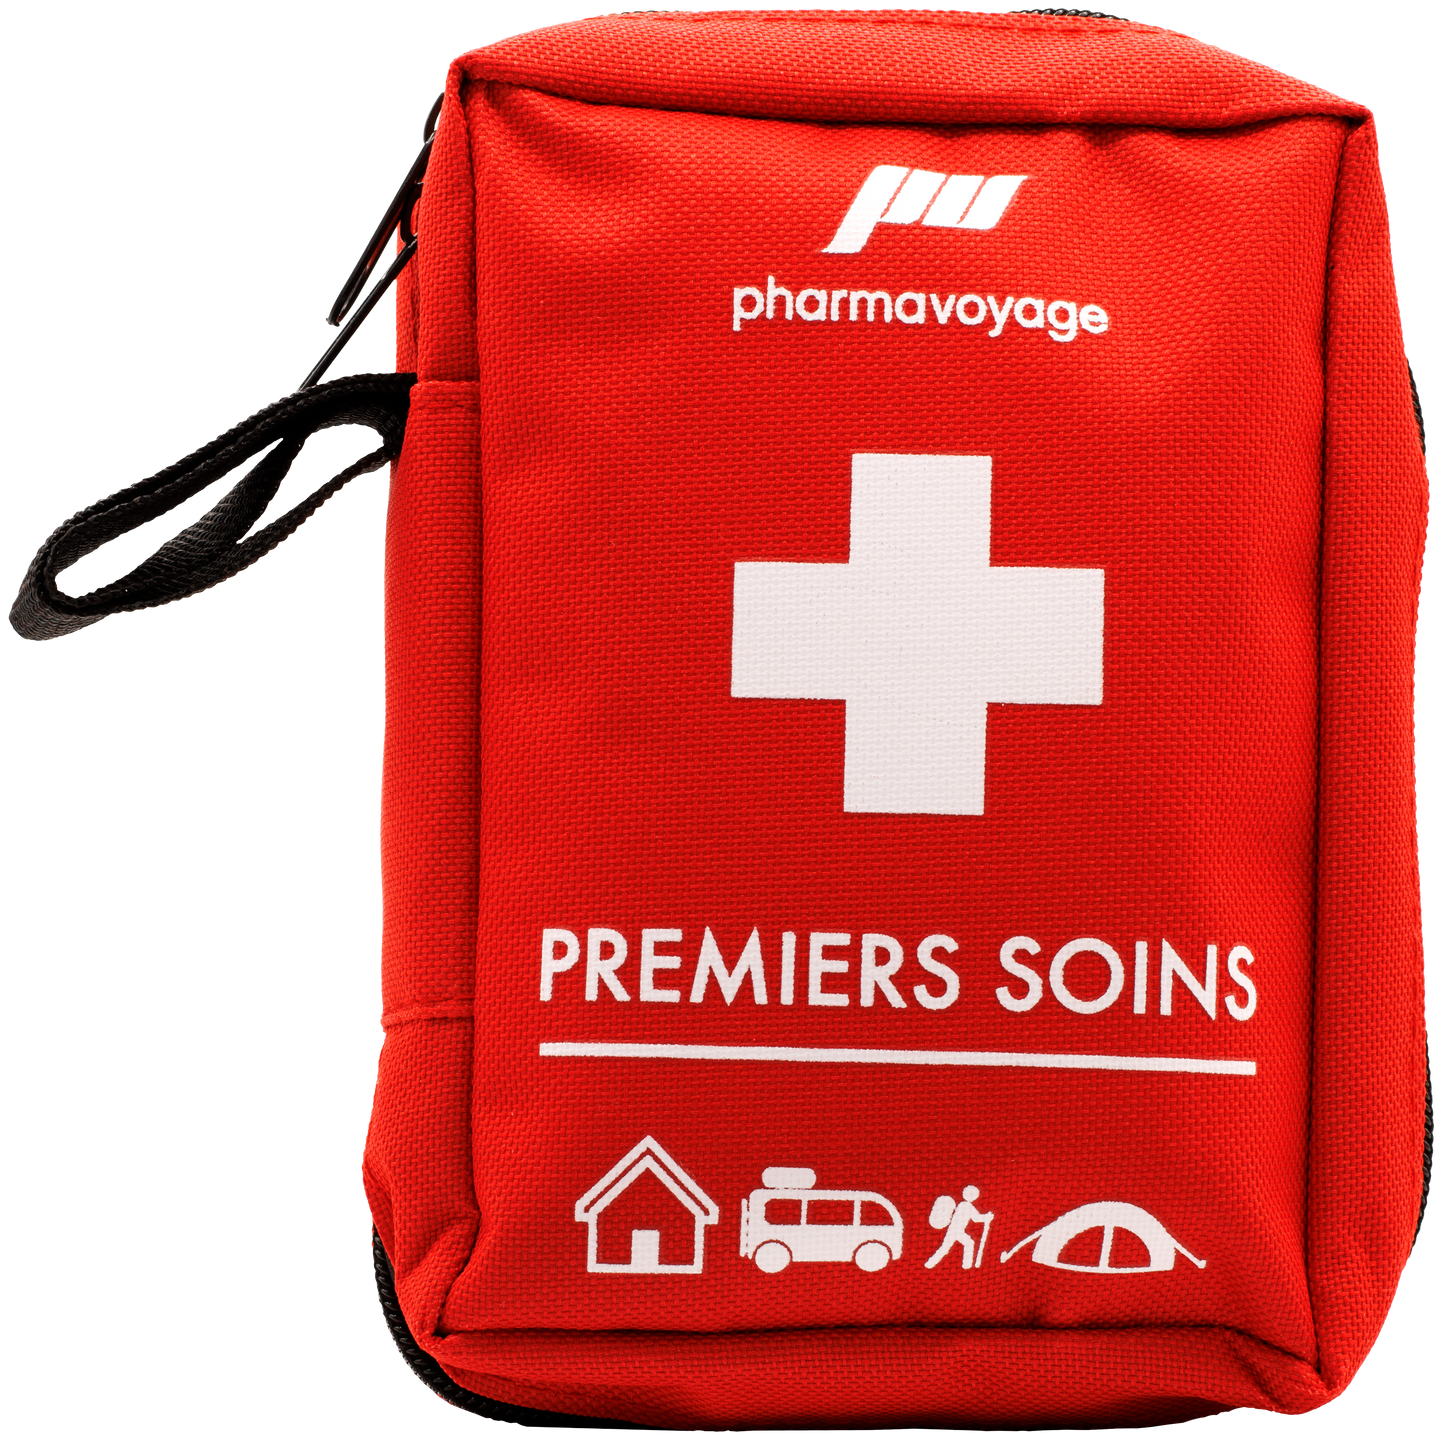 Trousse Premiers Soins Pharmavoyage – Atonoma